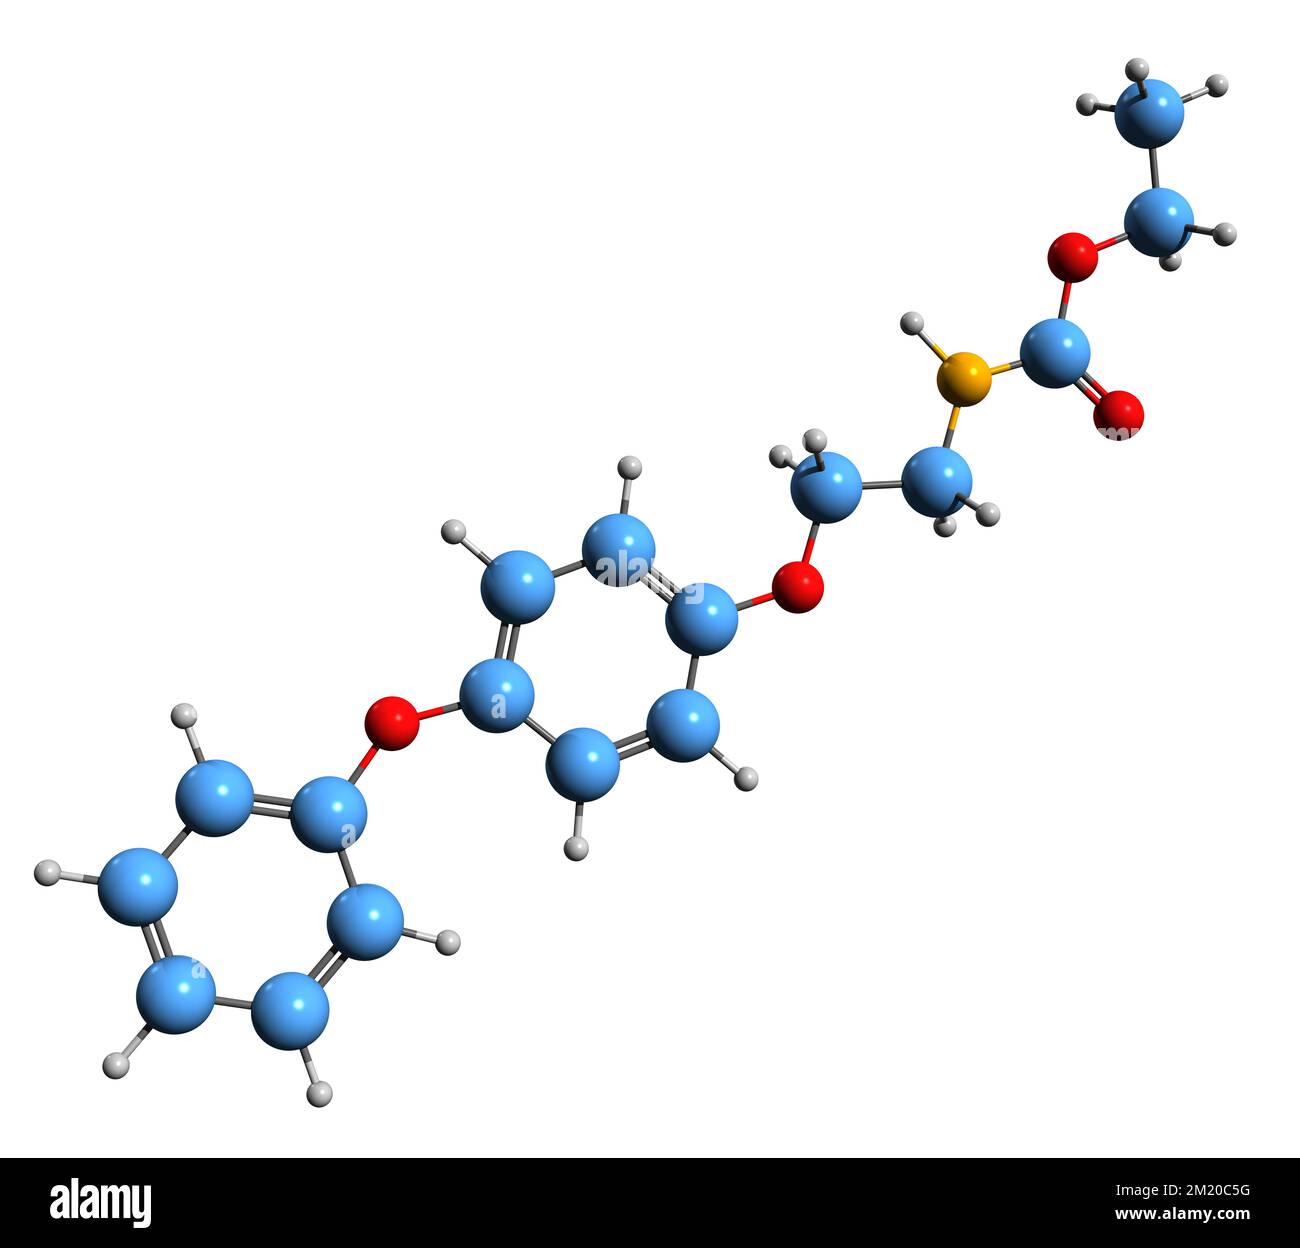 3D-Bild der Fenoxycarb-Skelettformel - molekularchemische Struktur eines auf weißem Hintergrund isolierten Carbamat-Insekten-Wachstumsreglers Stockfoto